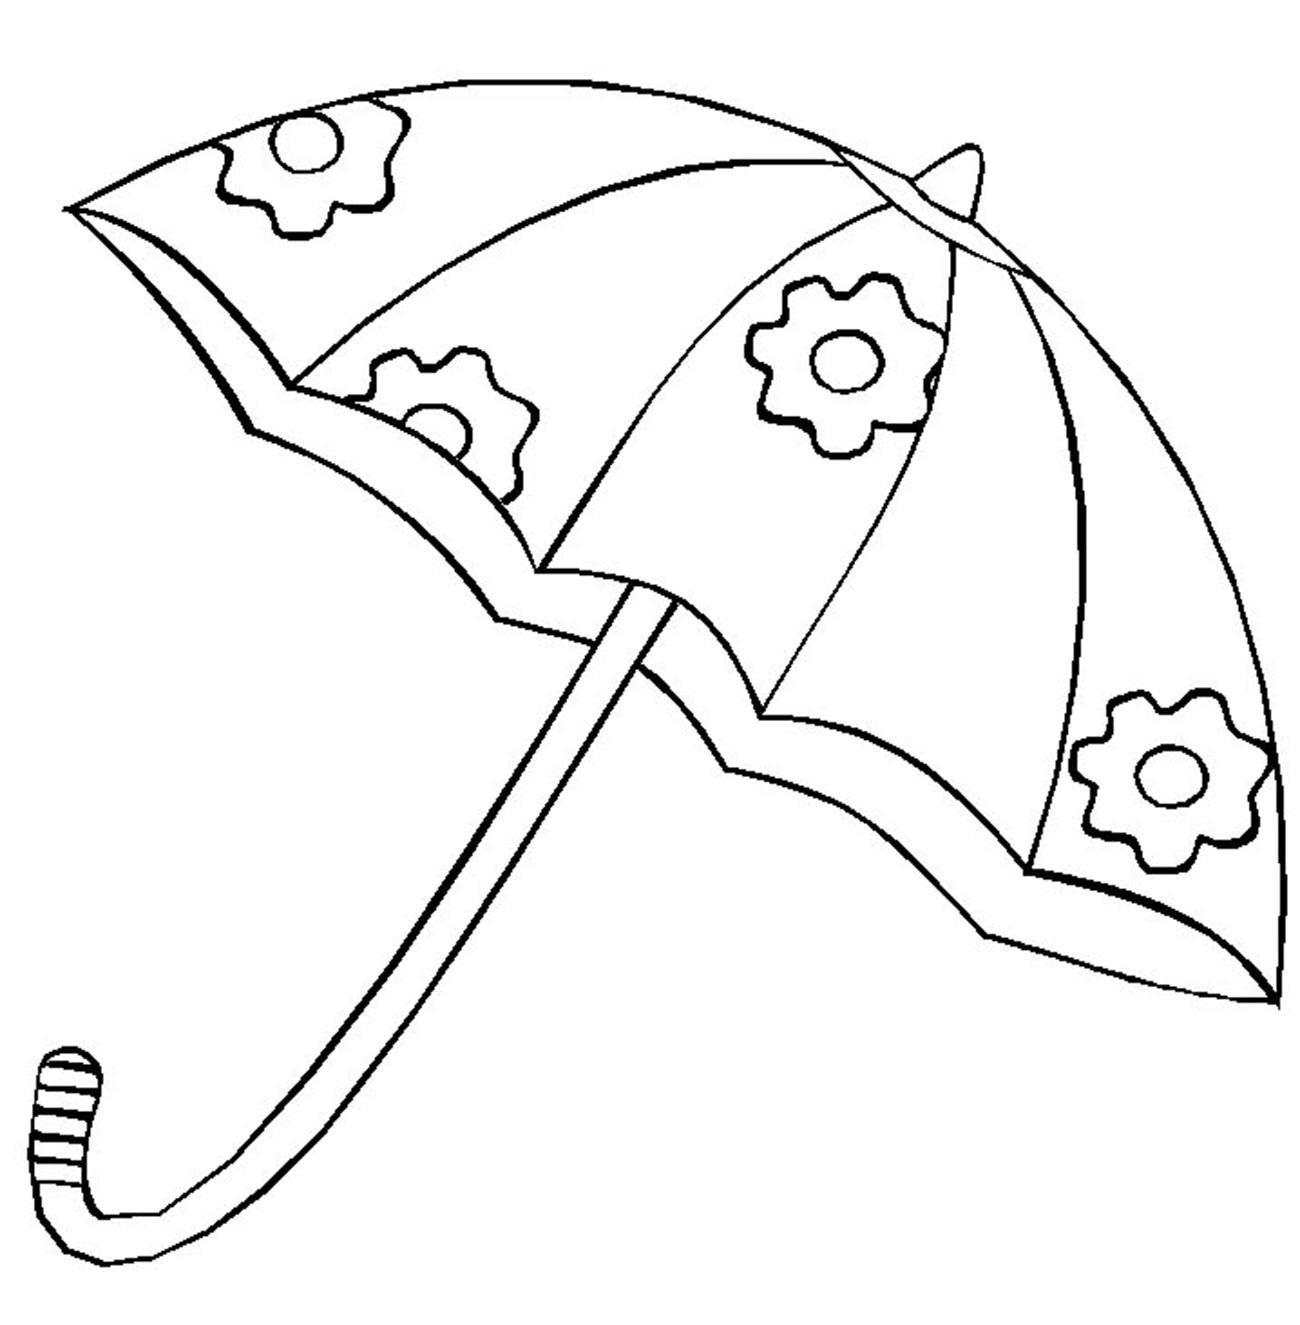 Зонтик раскраска для детей - 67 фото